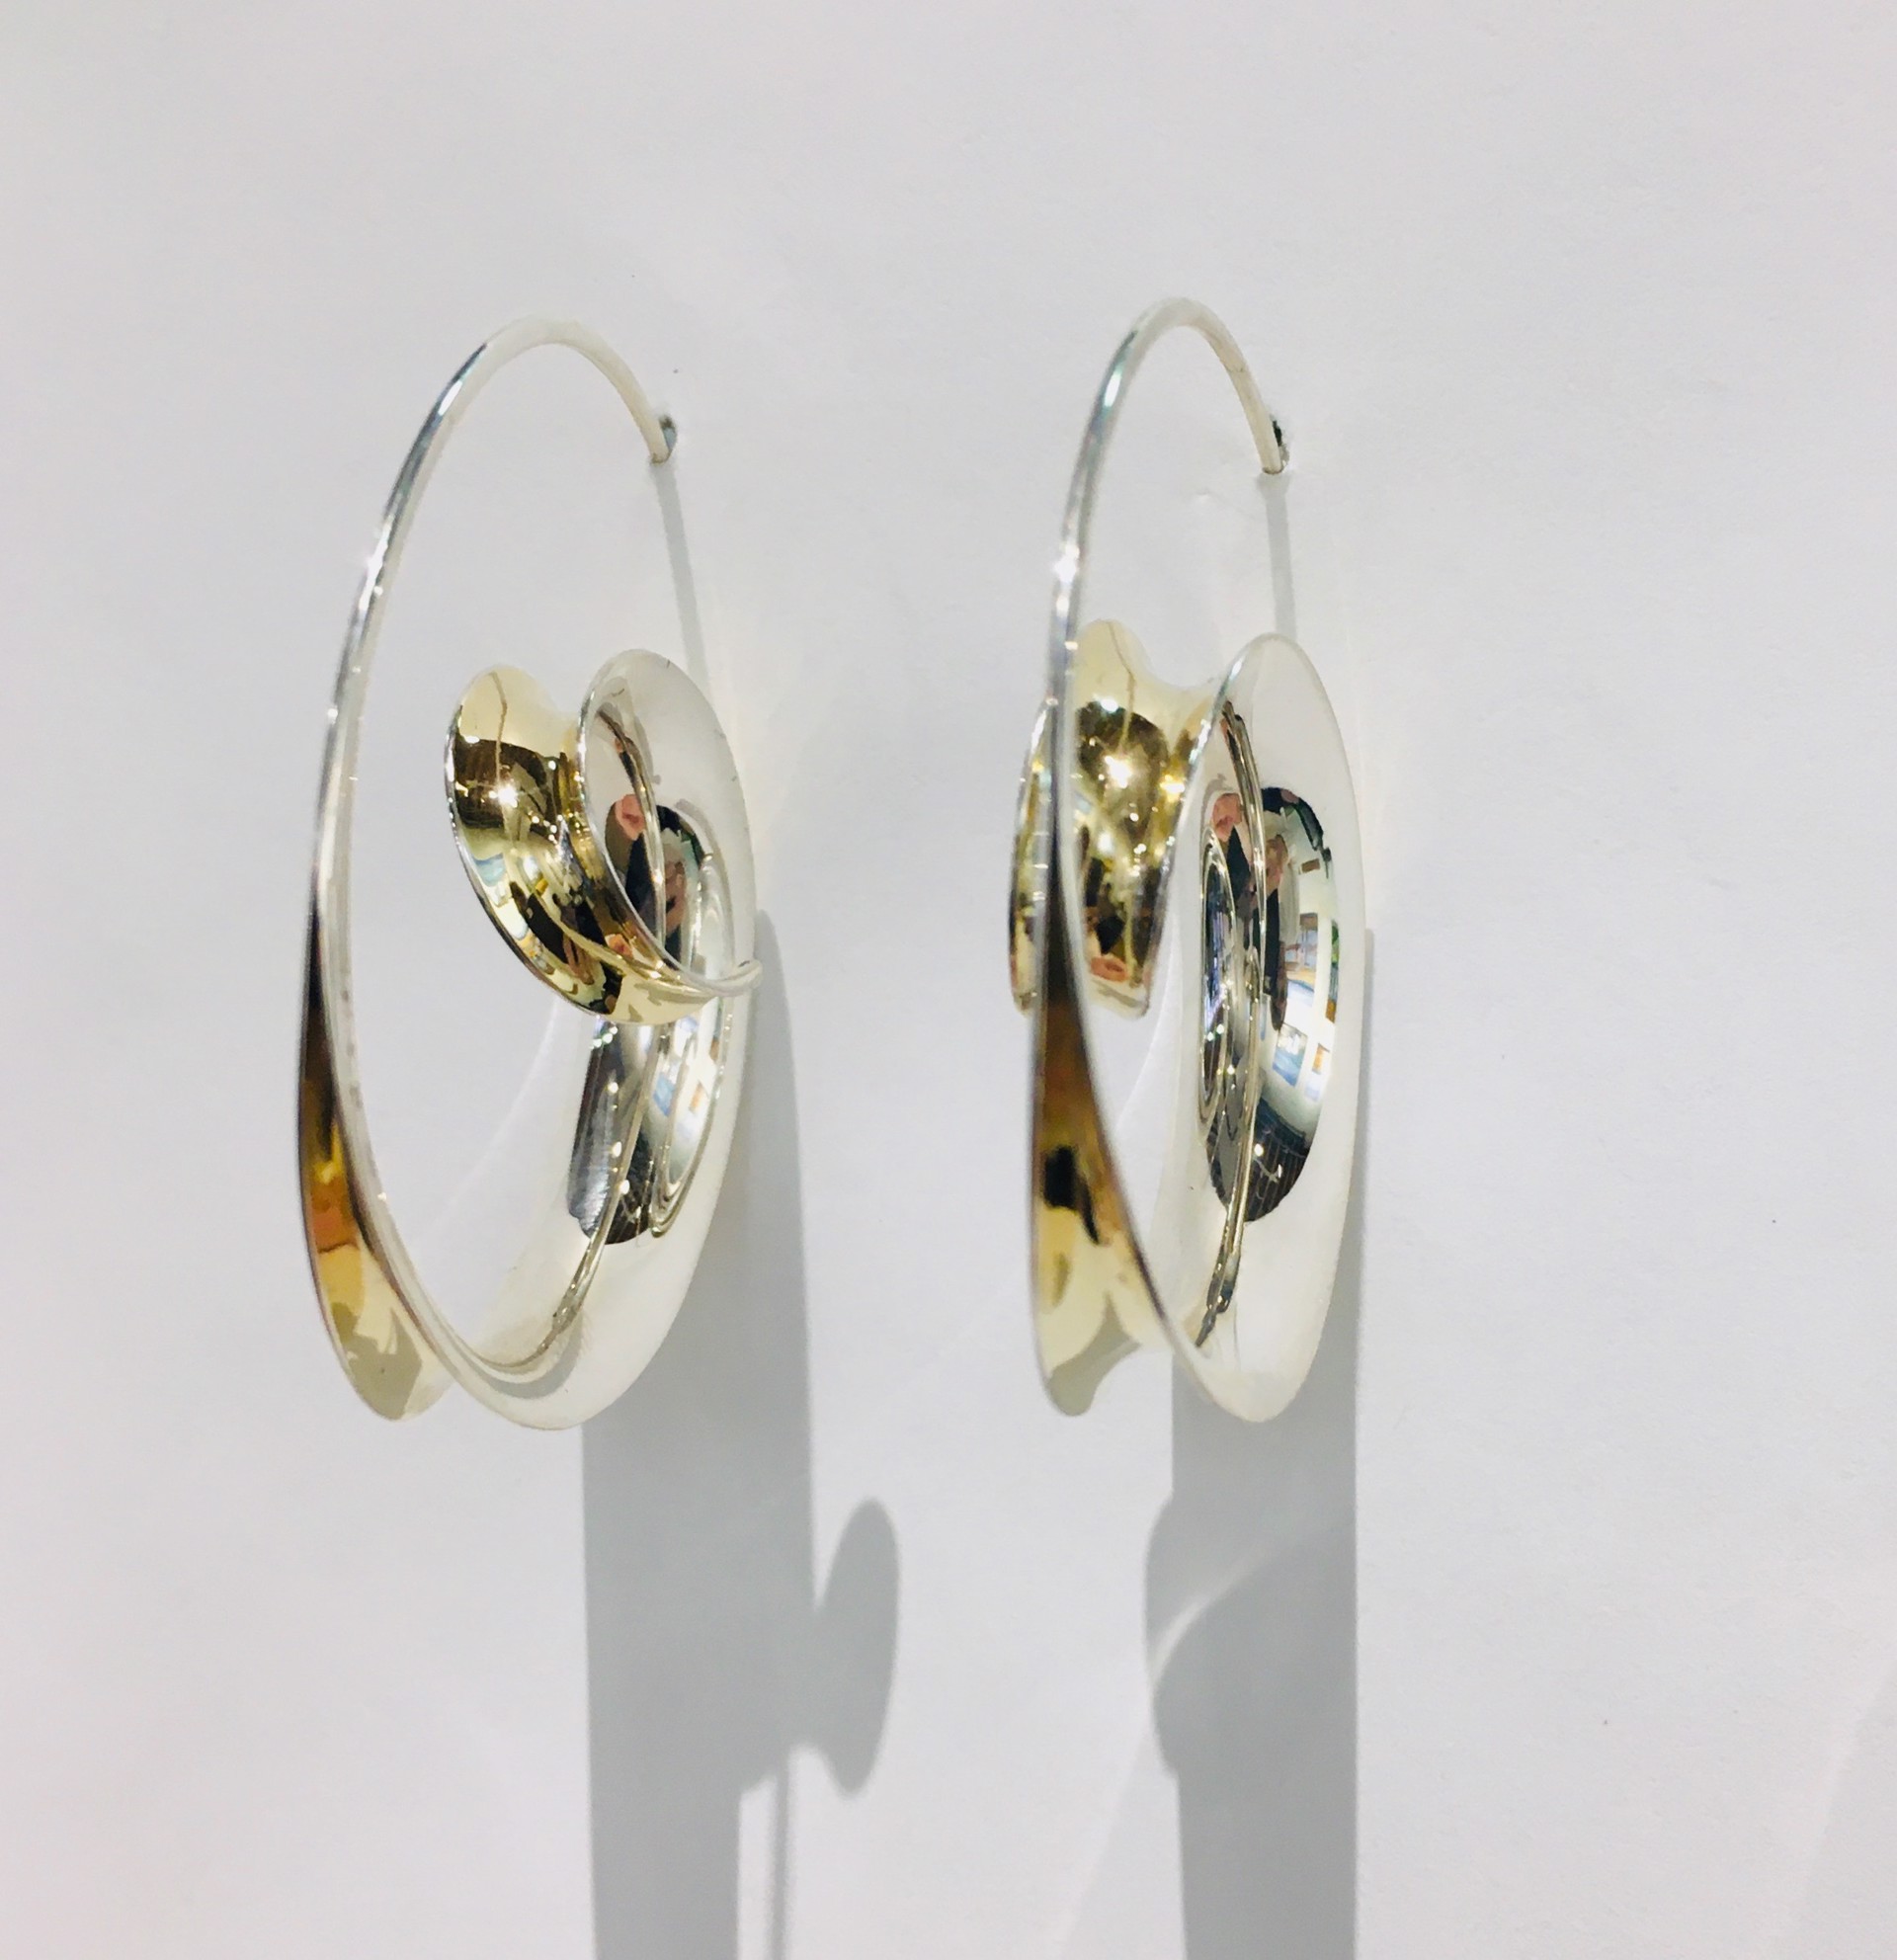 Nancy Linkin Hoop Earrings (SOLD) by NANCY LINKIN